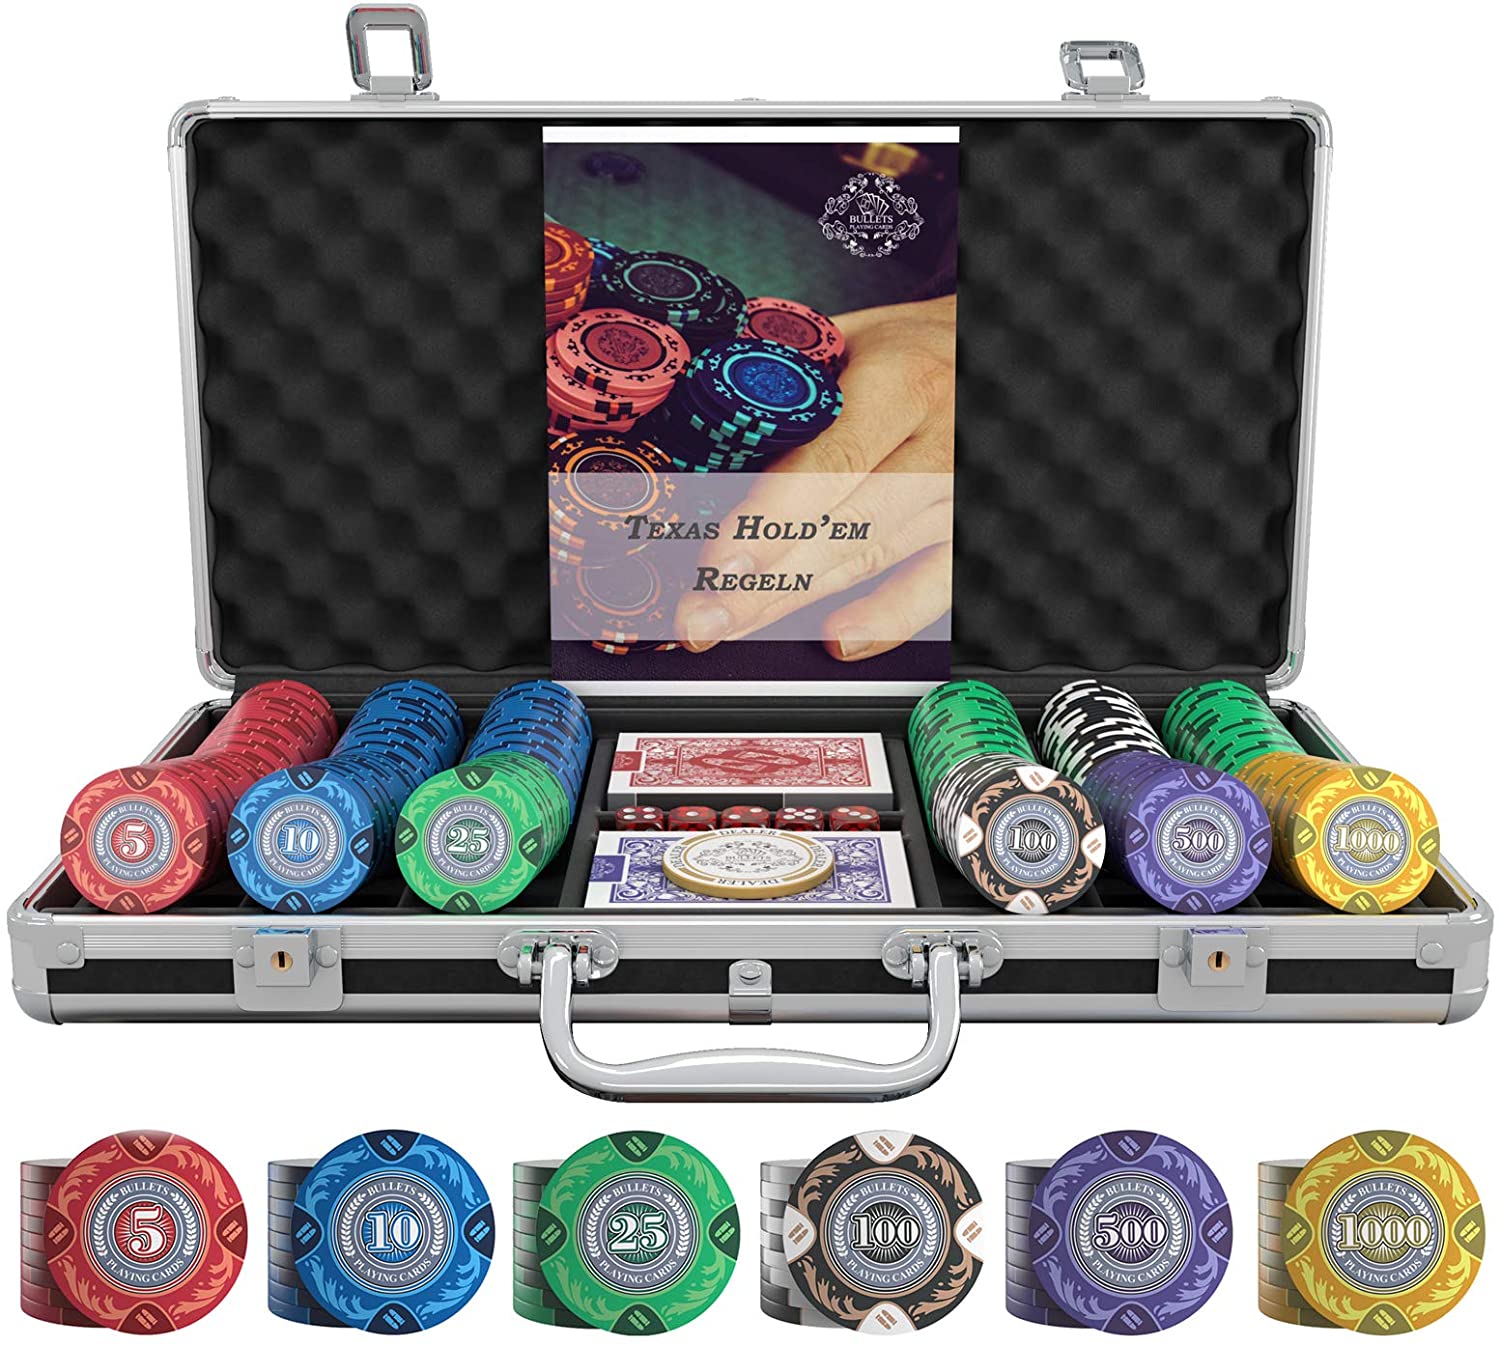 Pokerkoffer für 1000 Poker Chips Poker Set m Zubehör Pokerkarten Würfel Buttons